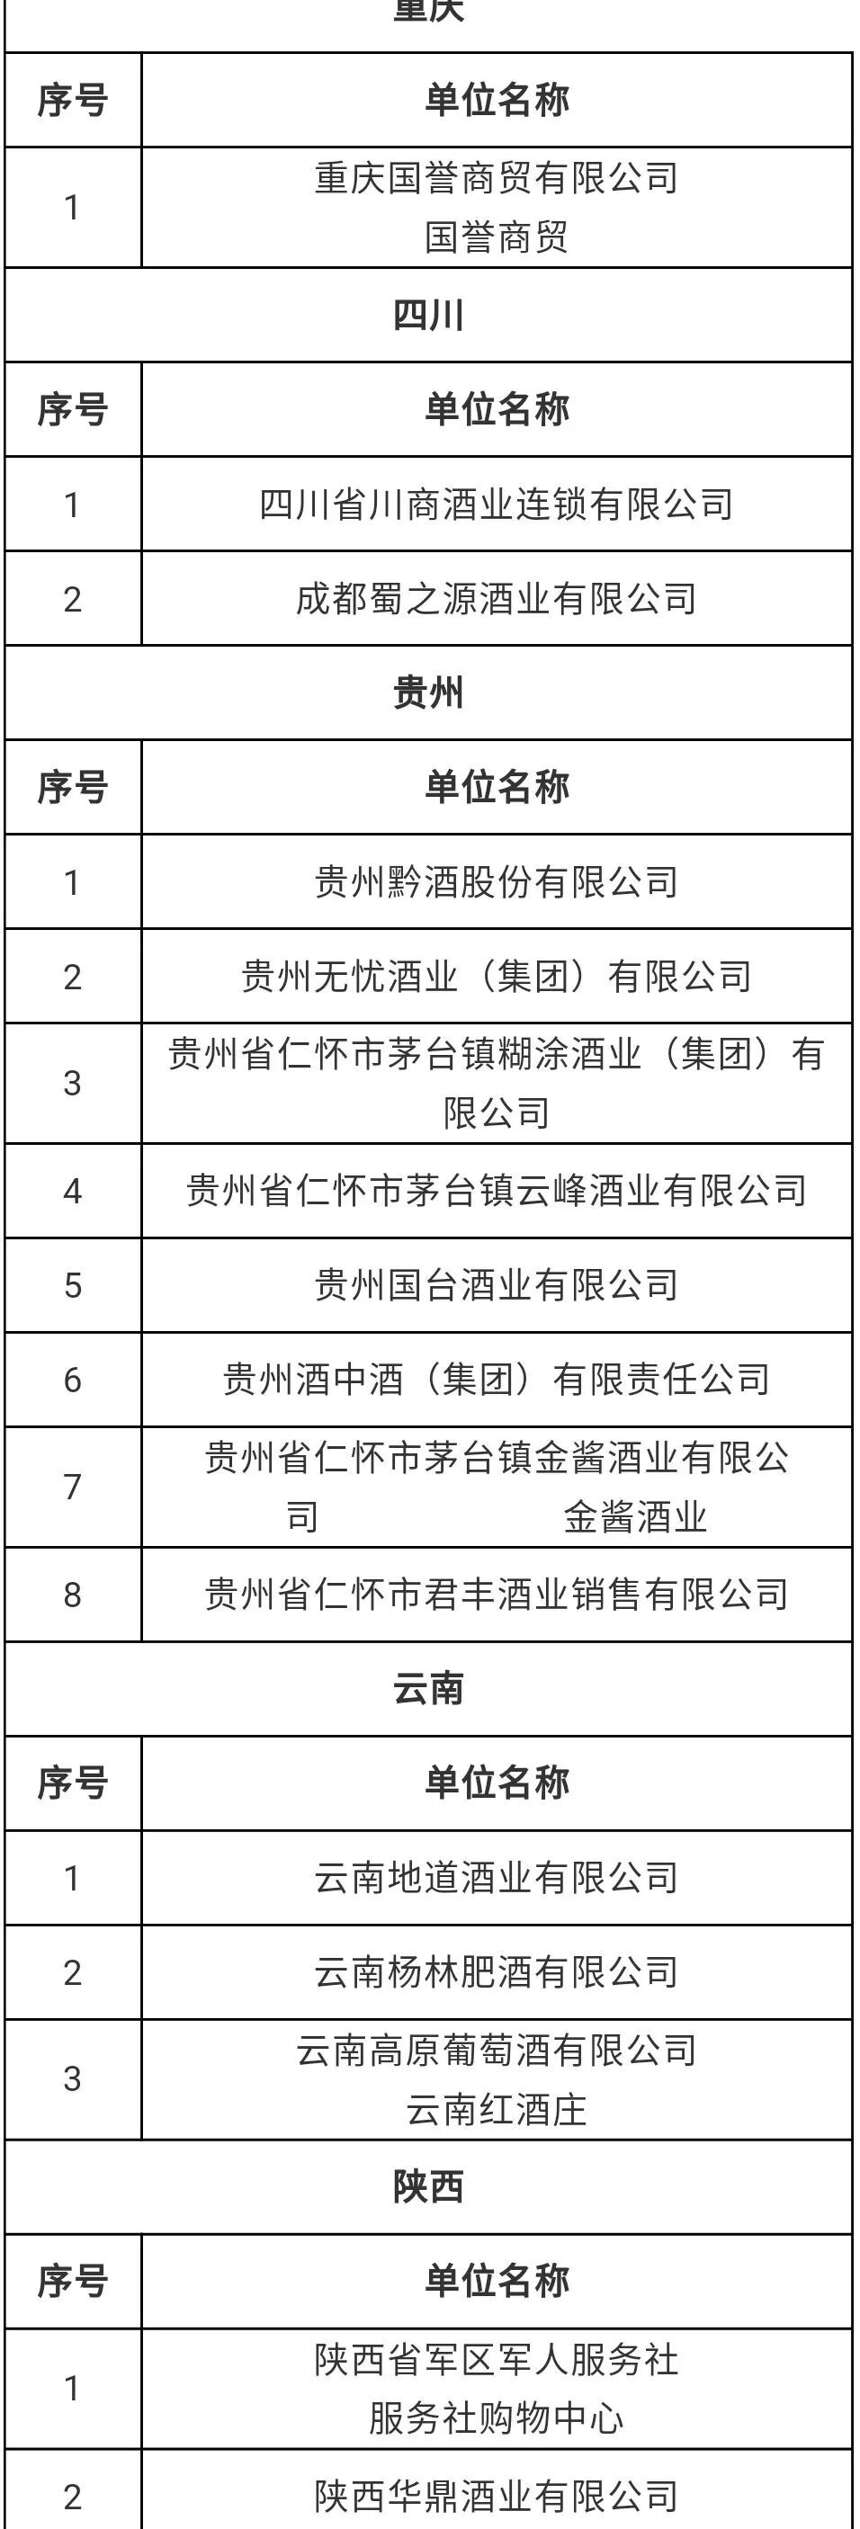 第四批国家级放心酒示范店名单出炉；贵州出台六大举措助推酒业